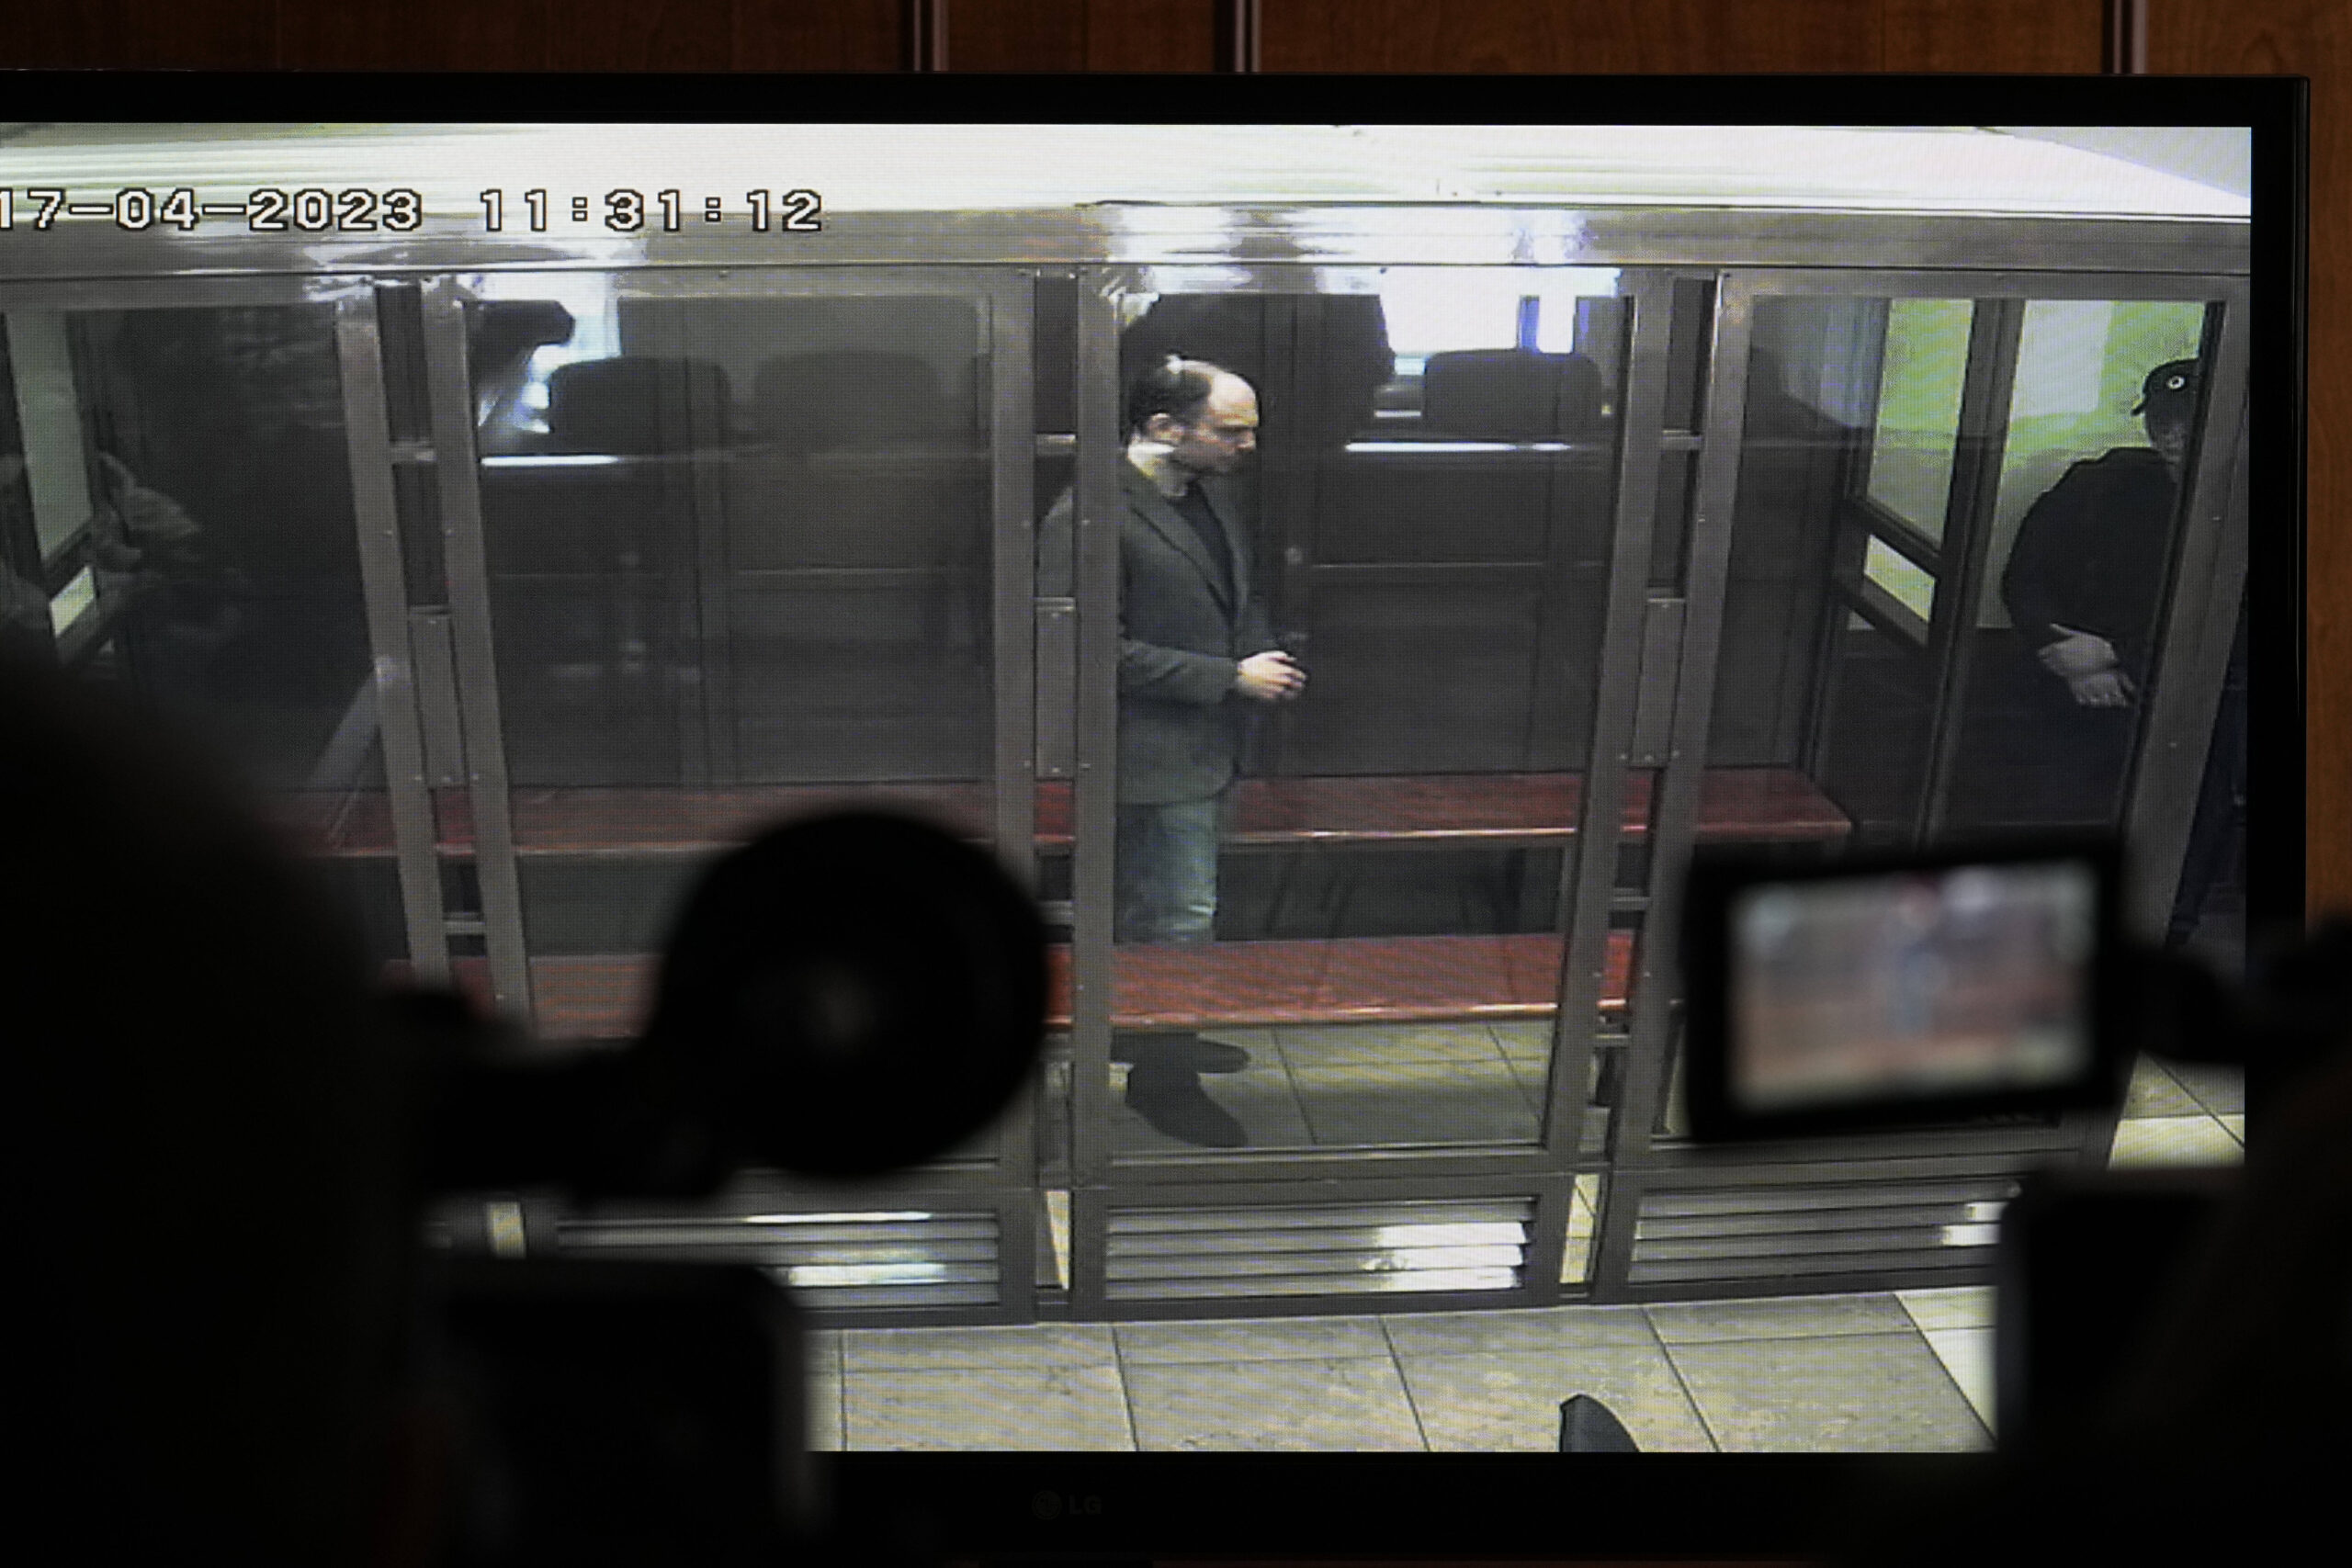 Vladimir Kara-Murza en una pantalla de televisión mientras permanece en una jaula de cristal mientras escucha el veredicto en una sala del Tribunal de la Ciudad de Moscú, en Moscú, Rusia, lunes 17 de abril de 2023. The Moscow City Court via AP